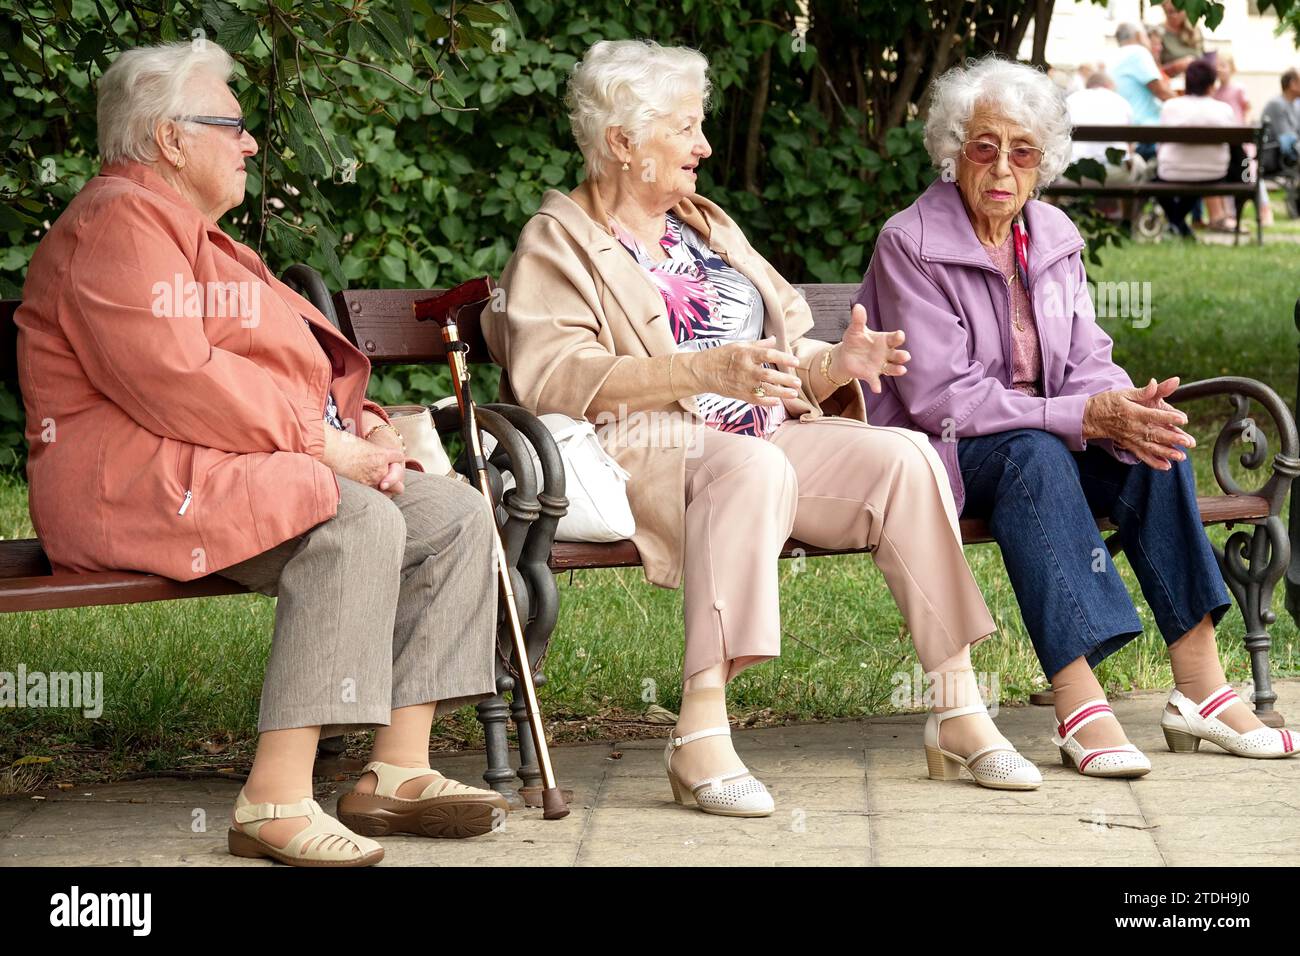 Trois vieilles dames discutant. Les retraités sont assis sur un banc dans un parc municipal retraite, génération plus âgée, personnes âgées, mode de vie des aînés, population vieillissante Banque D'Images